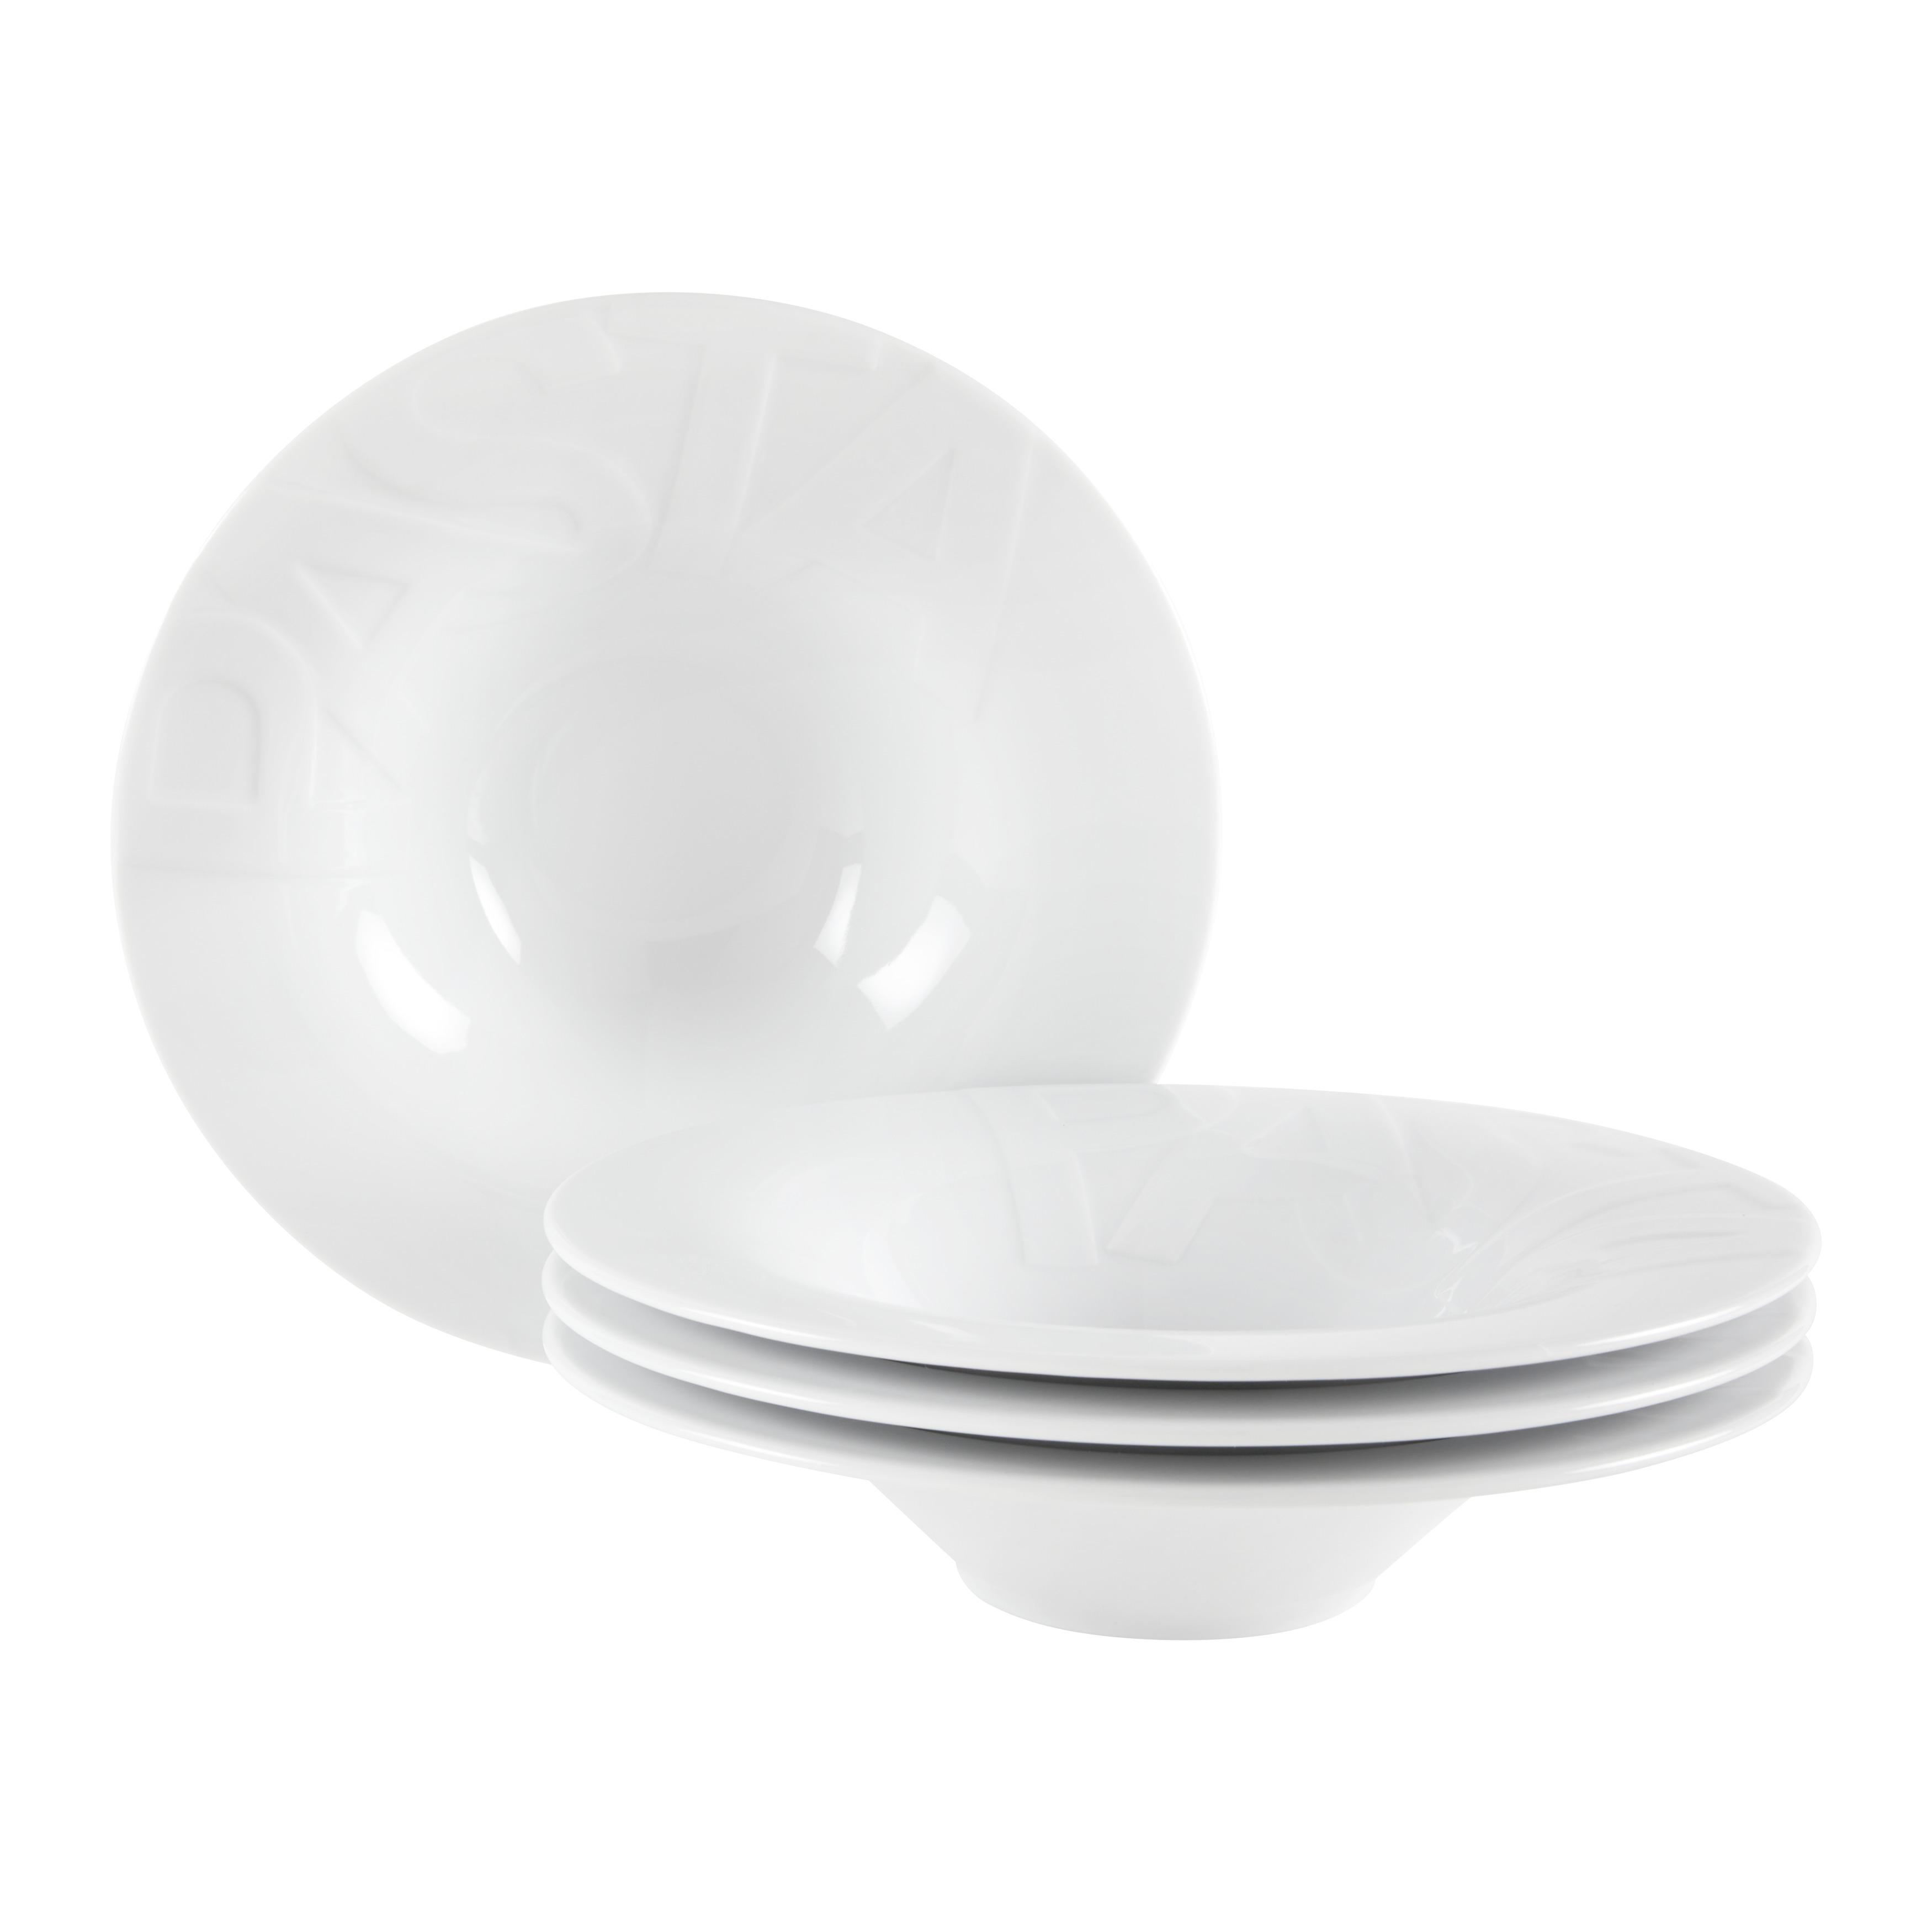 Pastatellerset Gourmet Weiß 4-teilig - Weiß, Keramik - Creatable